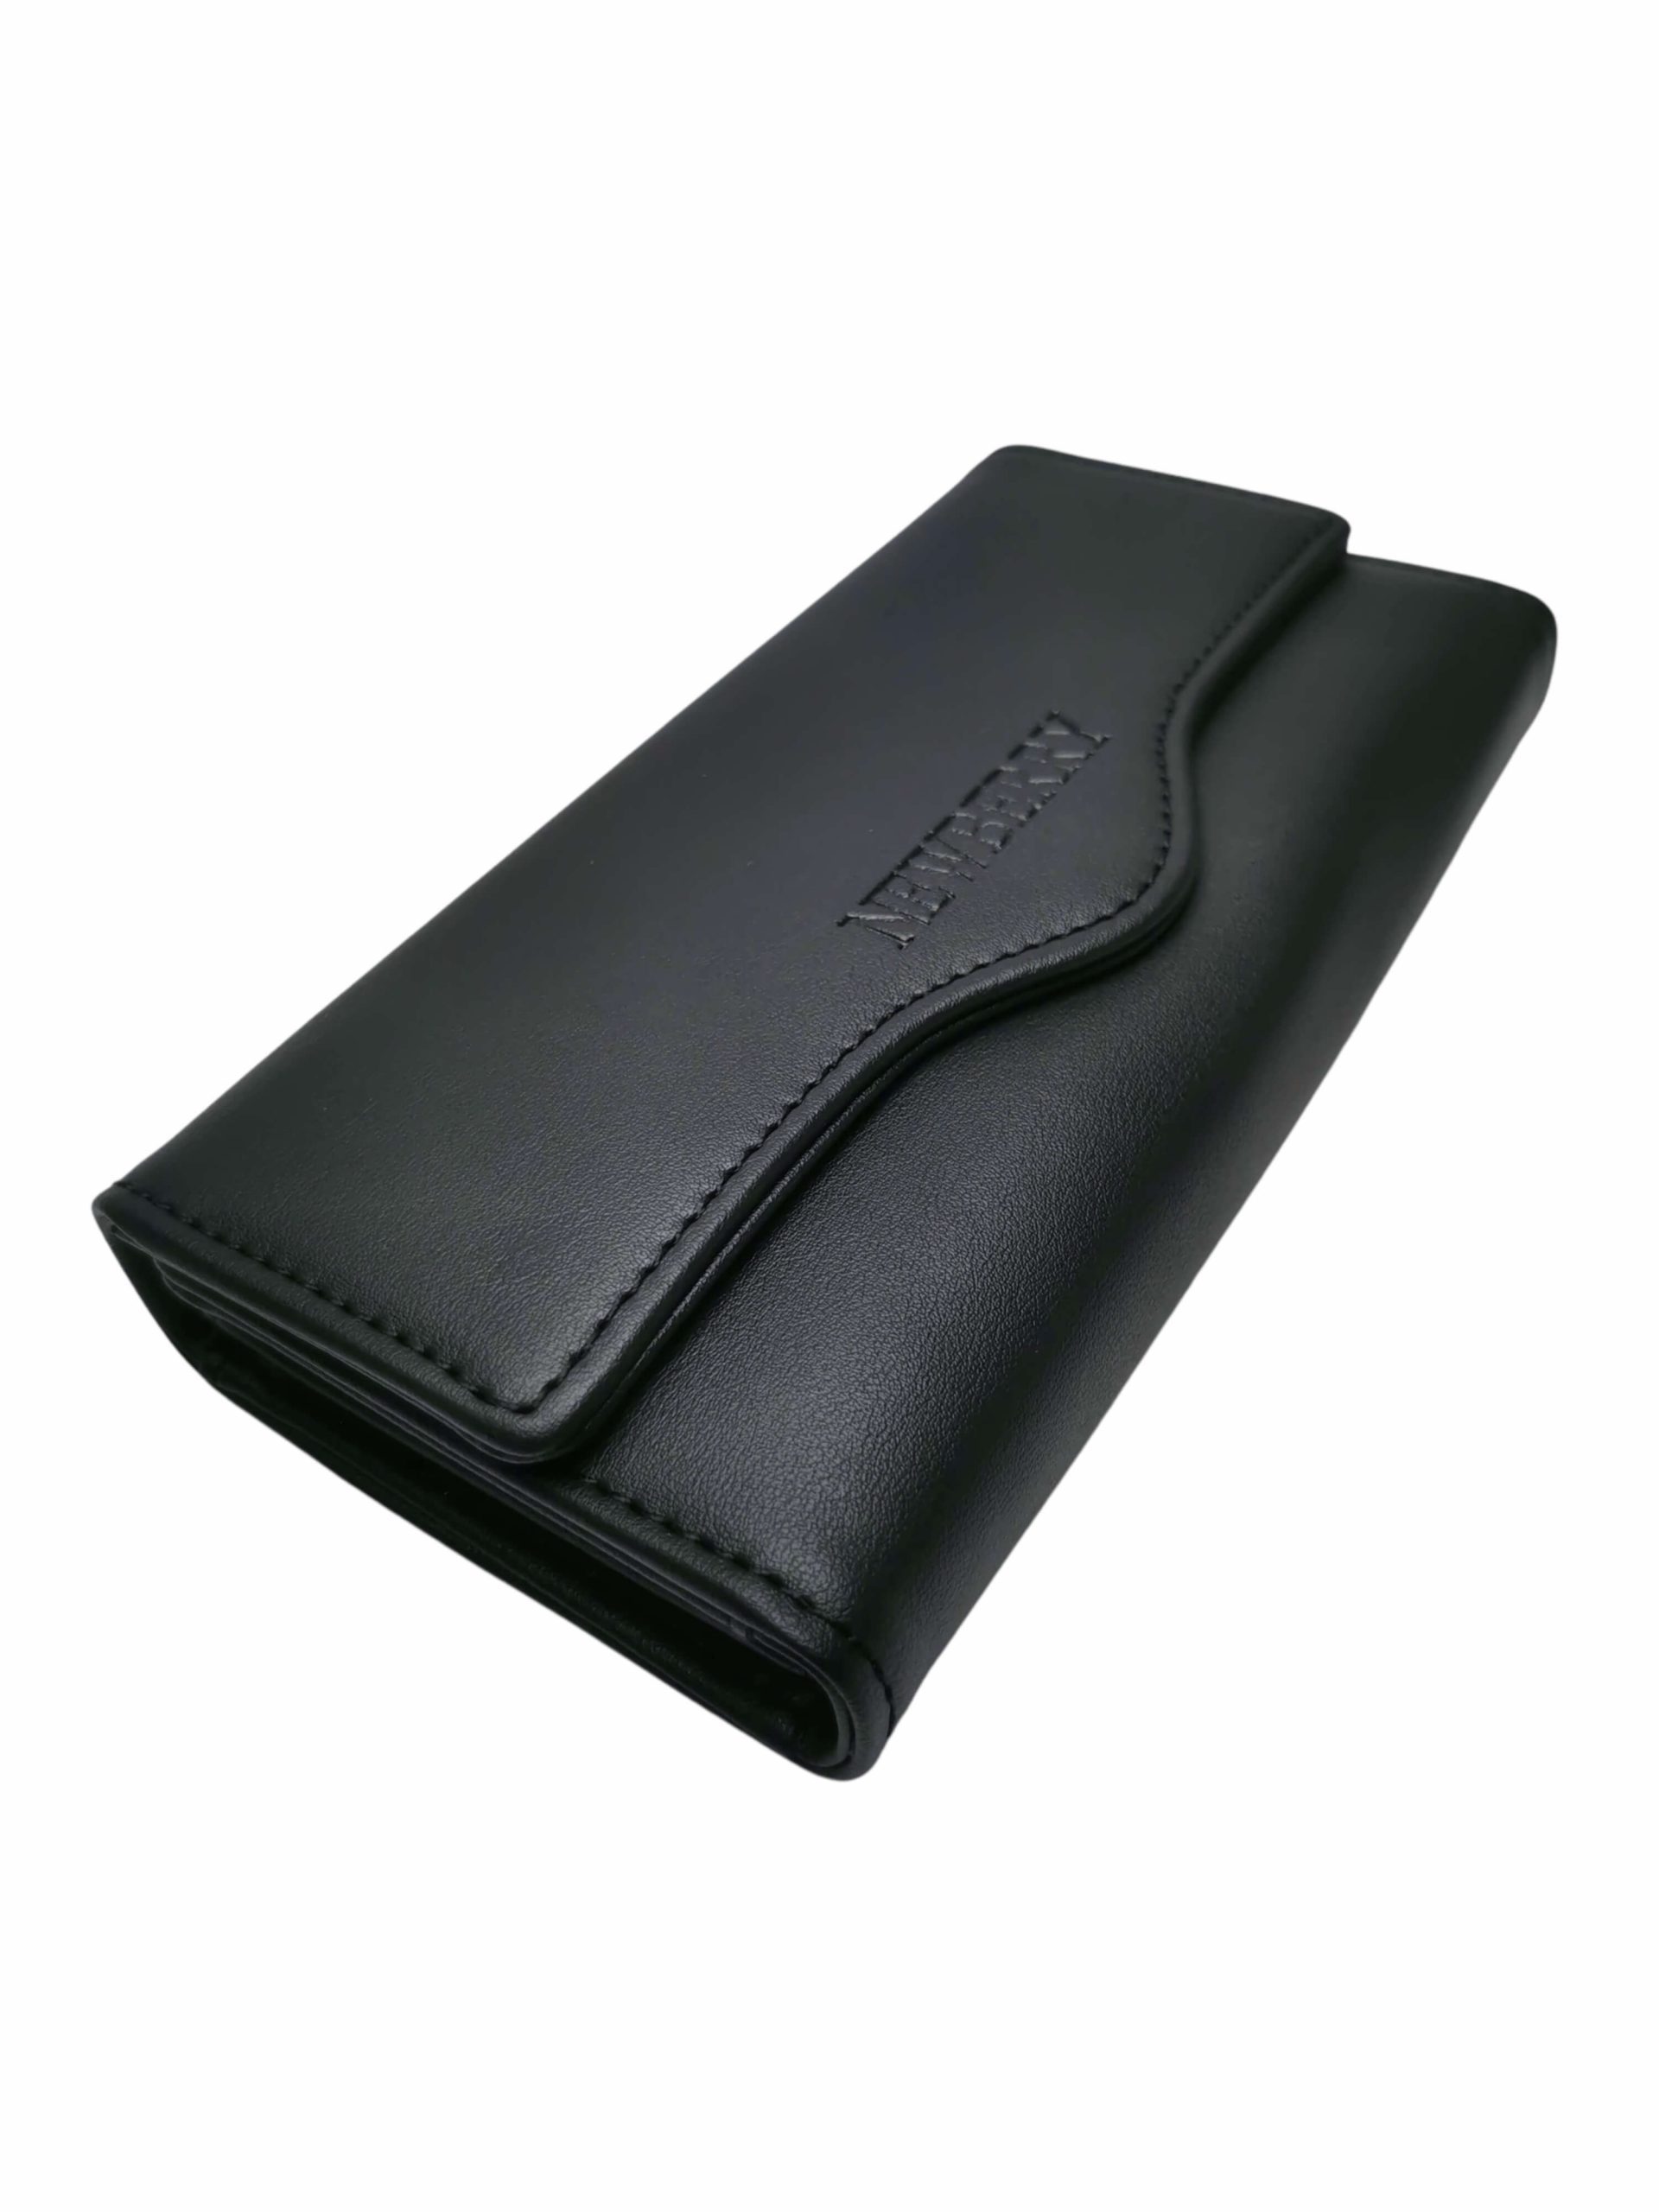 Dámská módní peněženka z měkké eko kůže, New Berry, A513-53, černá, přední strana peněženky